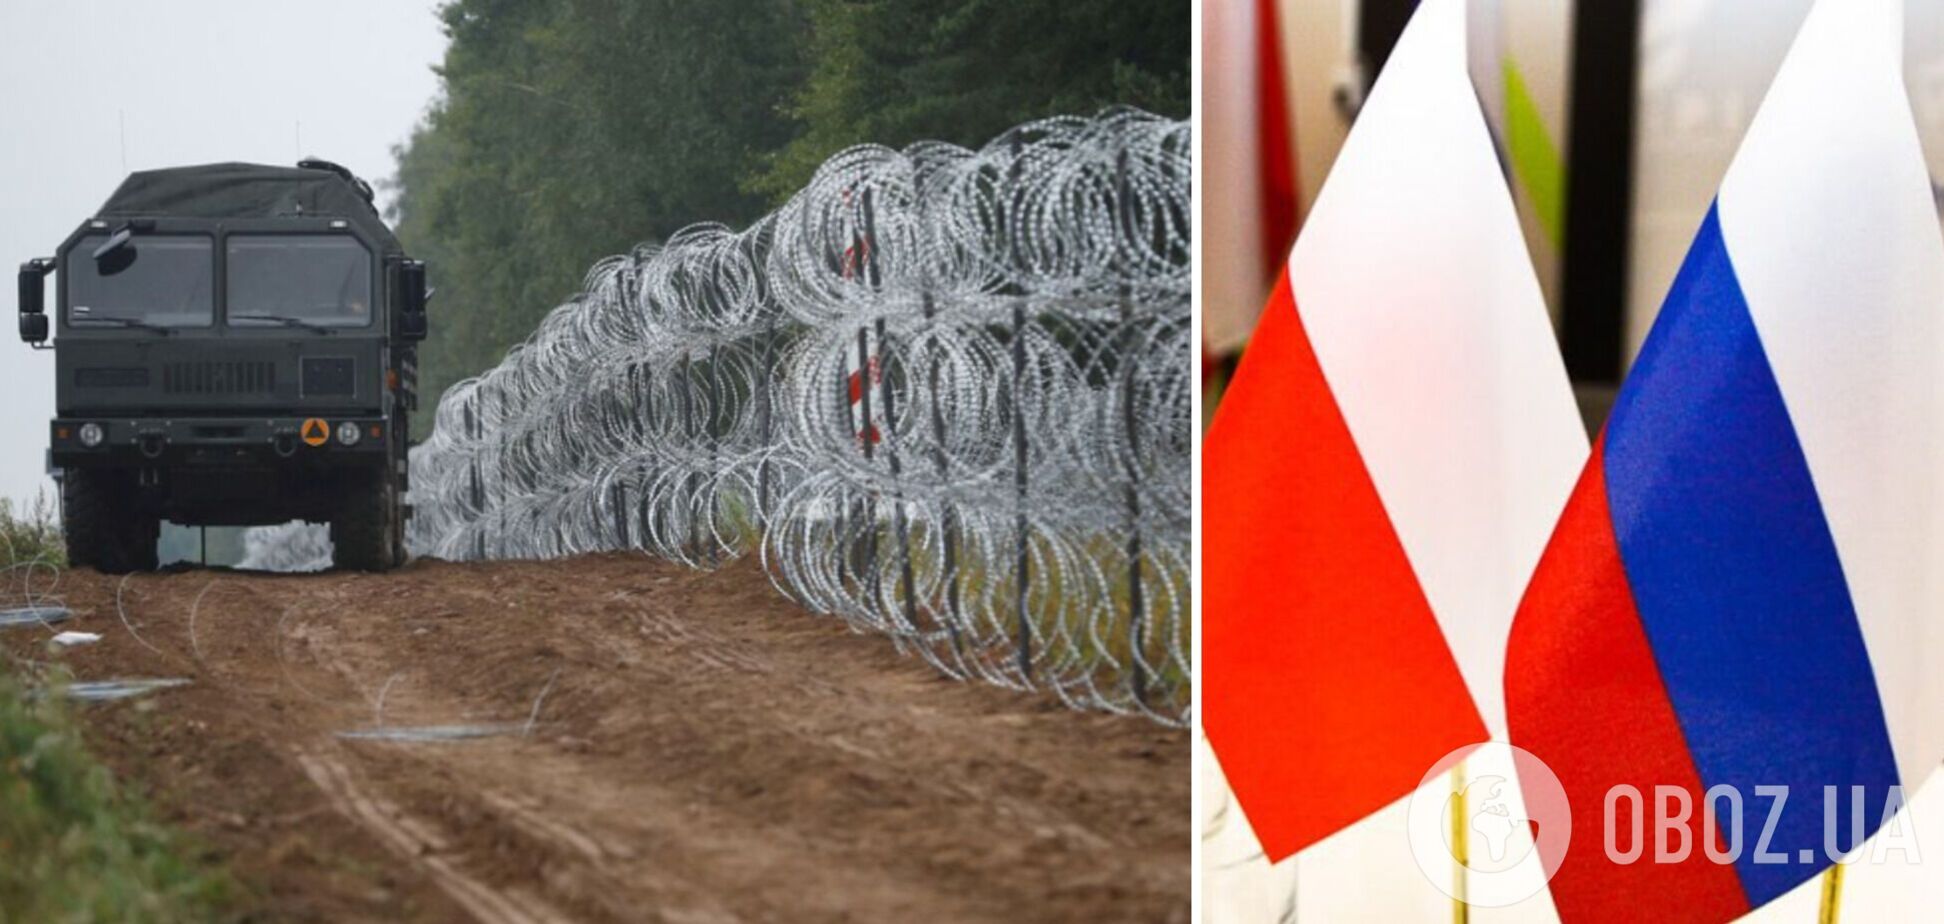 Польща може збудувати стіну на кордоні з Калінінградською областю РФ: стали відомі подробиці